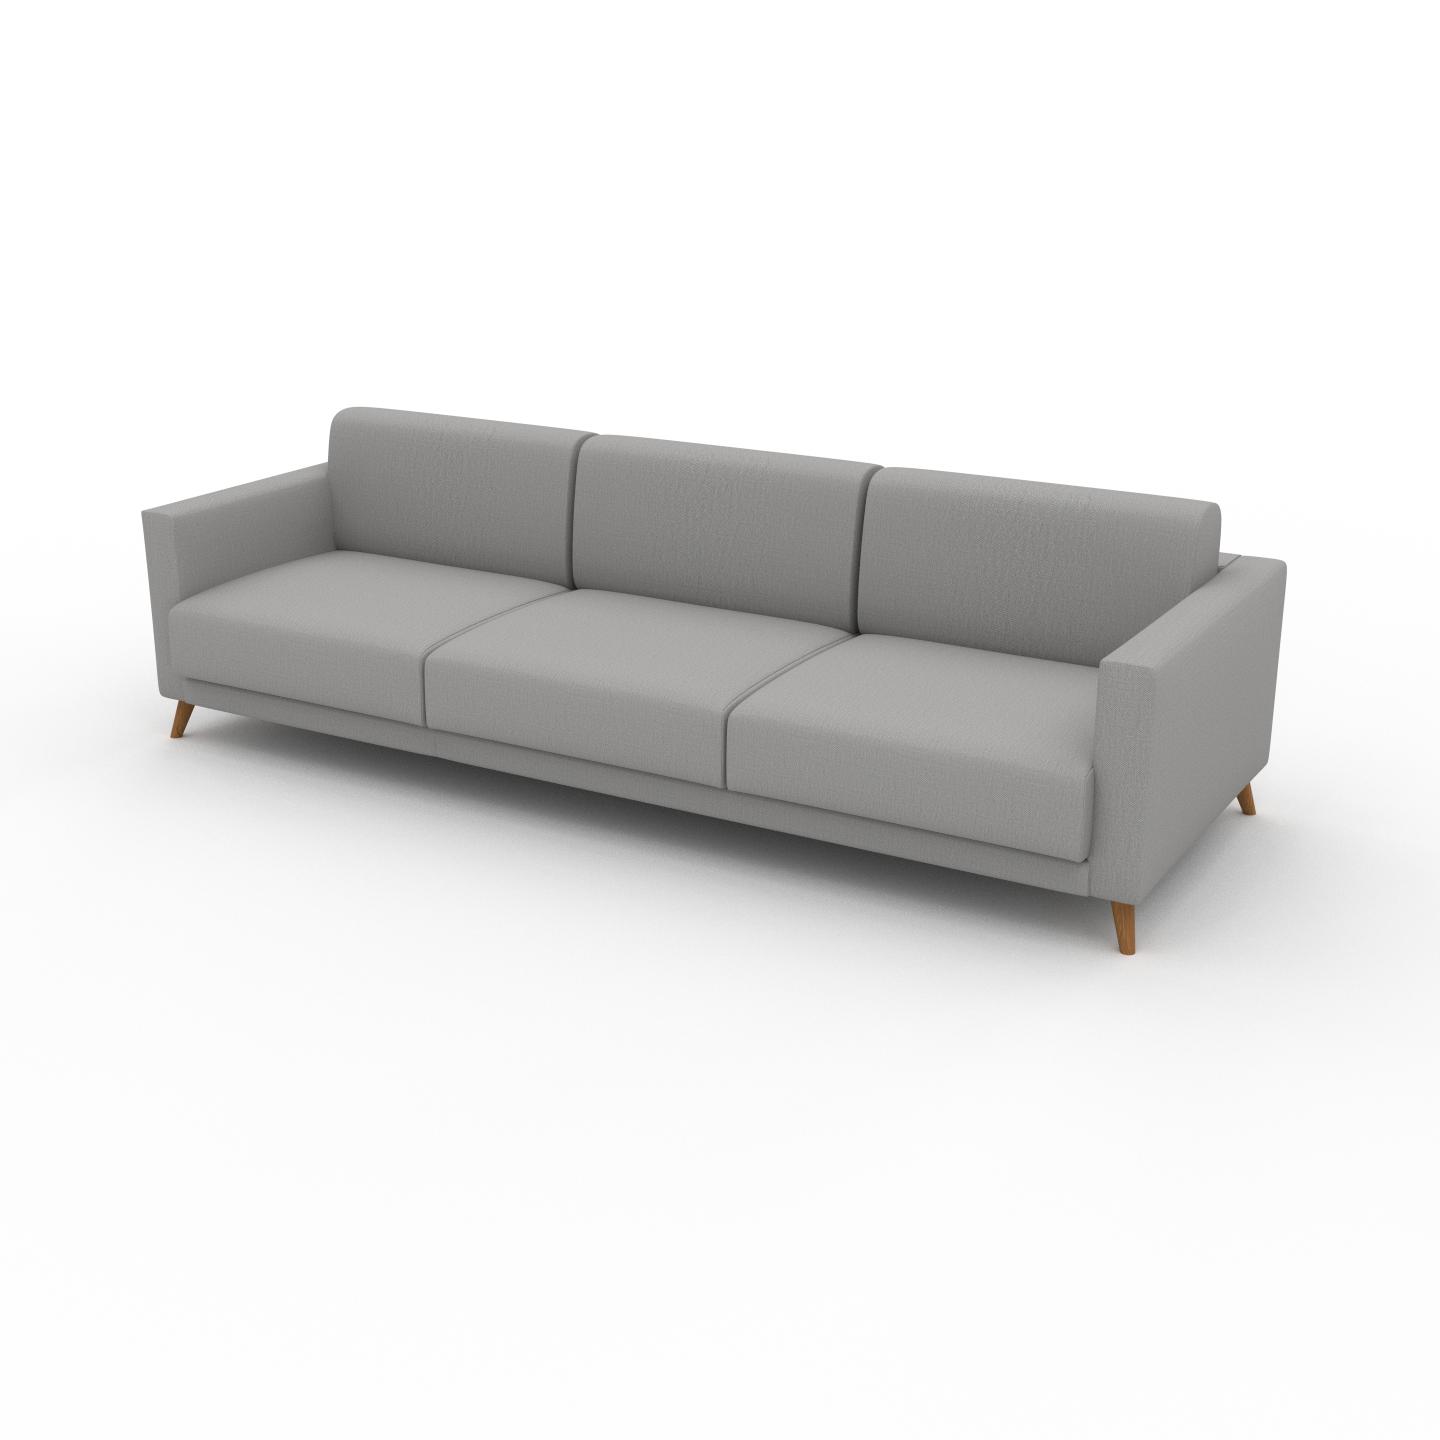 MYCS Sofa 3-Sitzer Lichtgrau Webstoff - Elegantes, gemütliches 3-Sitzer Sofa: Hochwertige Qualität, einzigartiges Design - 265 x 75 x 98 cm, konfigurierbar